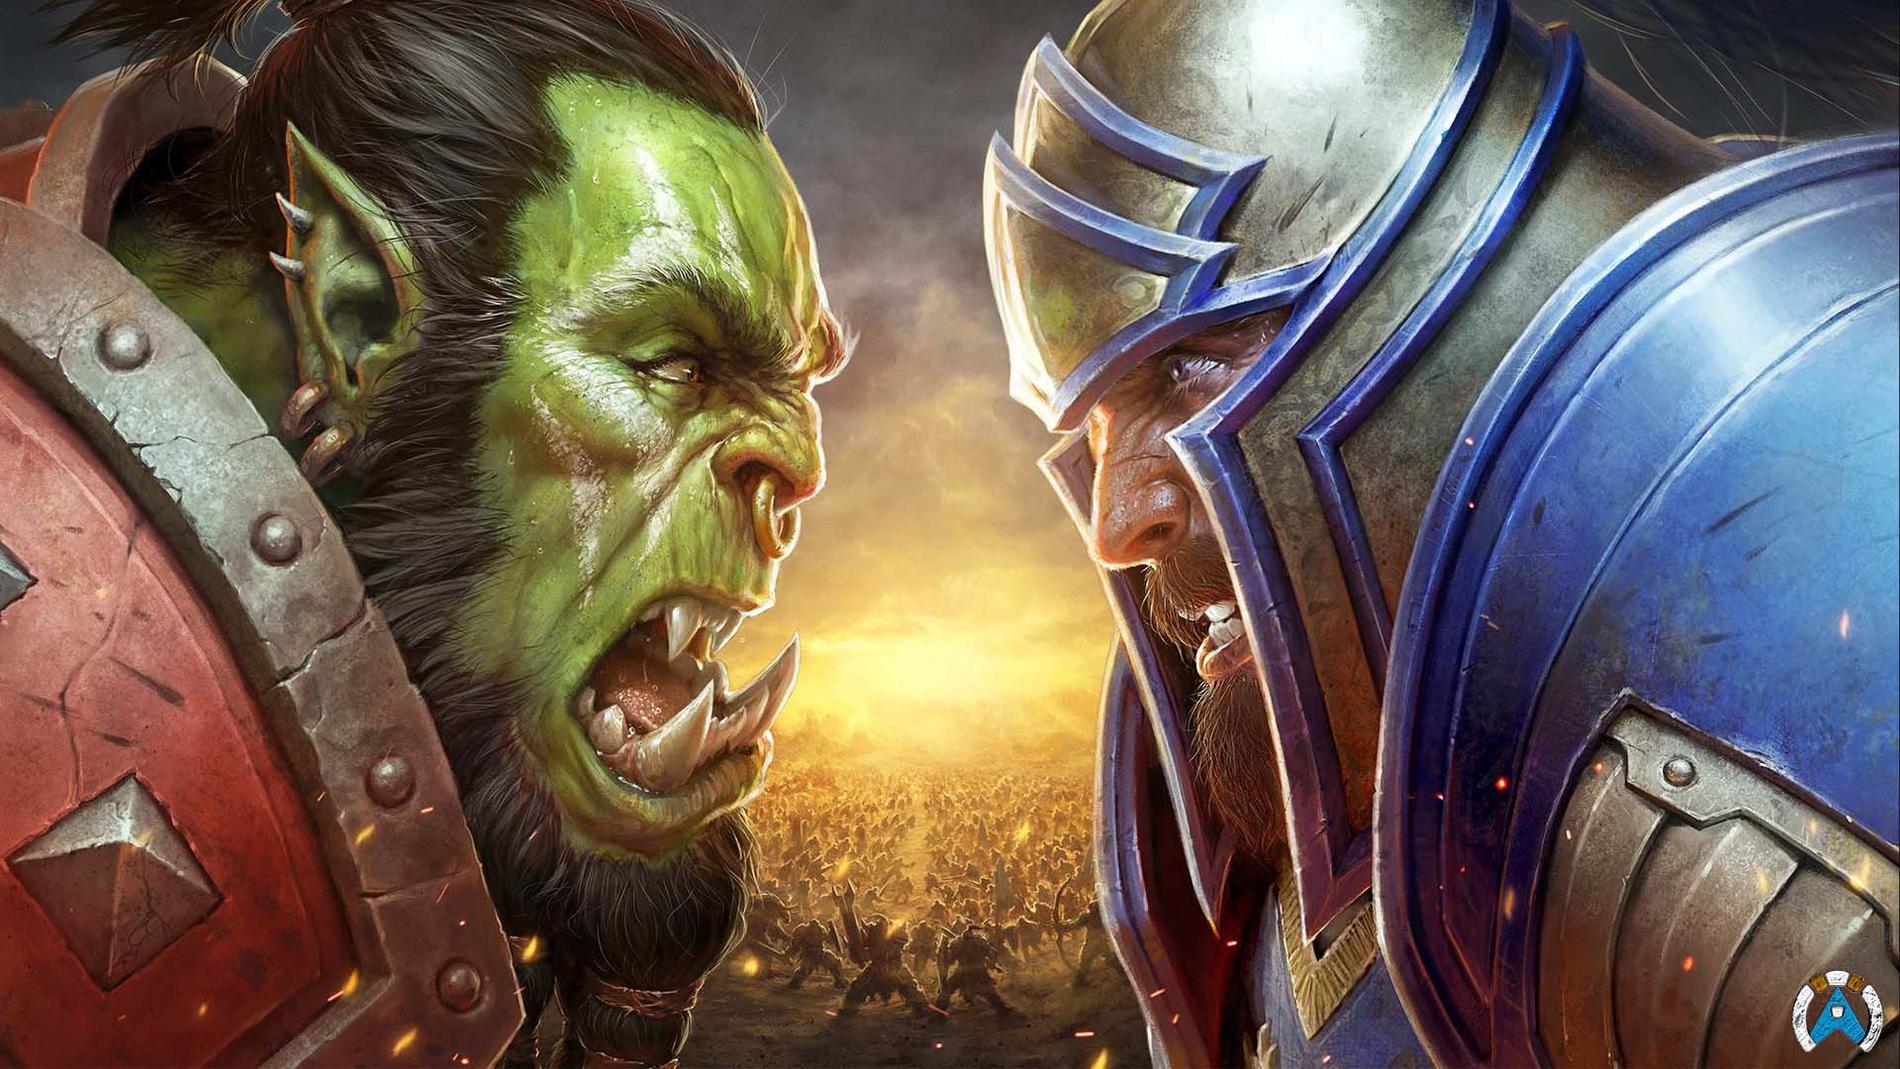 Warcraft-serien kom først ut som et strategispill i 1994. Siden har serien vokst til en gigantisk verden hvor spillere kan være forskjellige figurer i universet. 